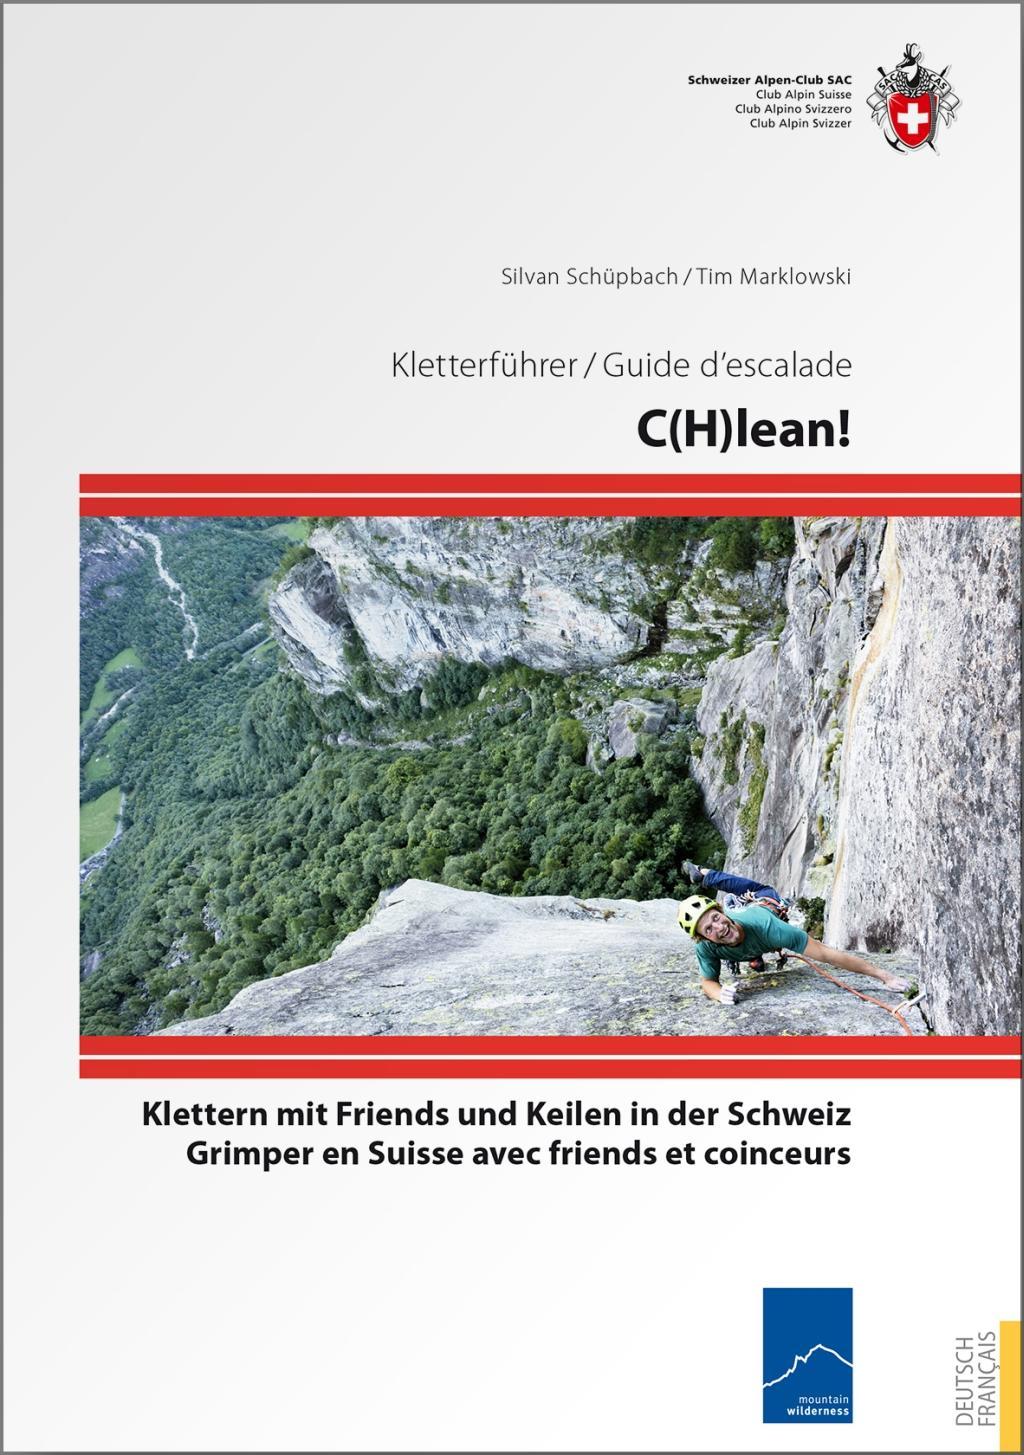 C(H)lean Klettern mit Friends und Keilen in der Schweiz